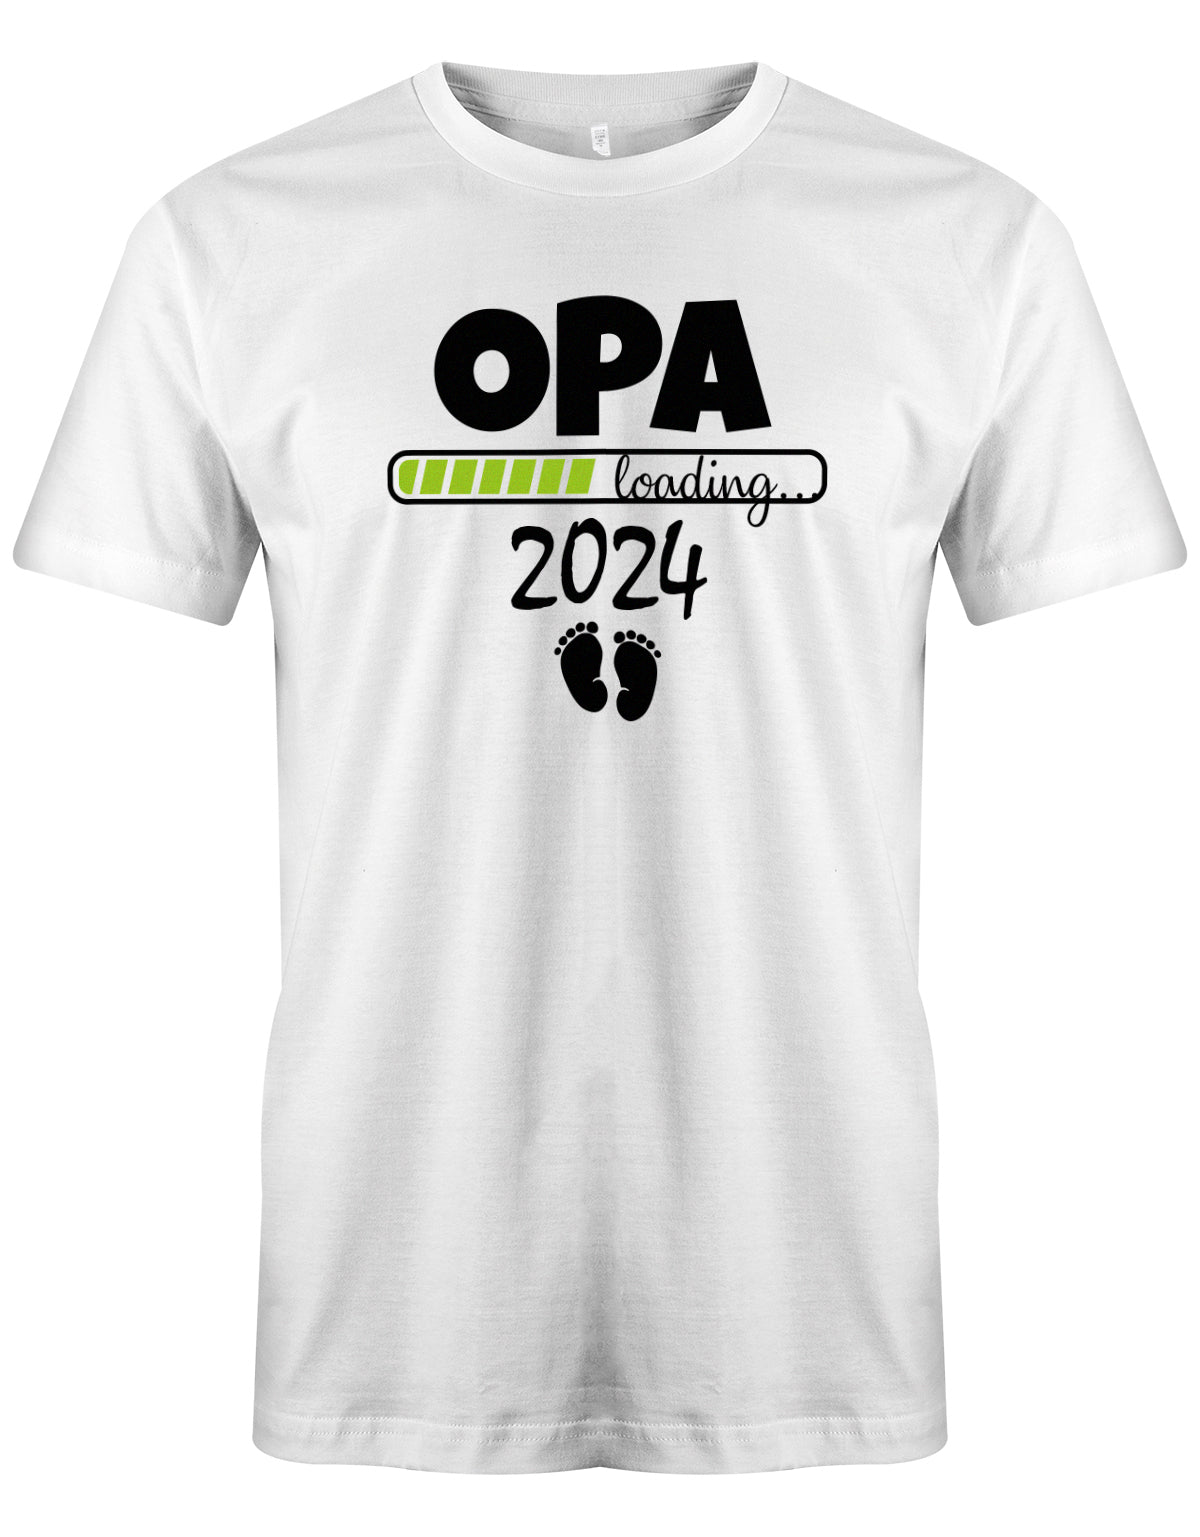 Opa T-Shirt Spruch für werdenden Opa - Opa Loading 2024 Balken lädt. Fußabdrücke Baby. Weiss